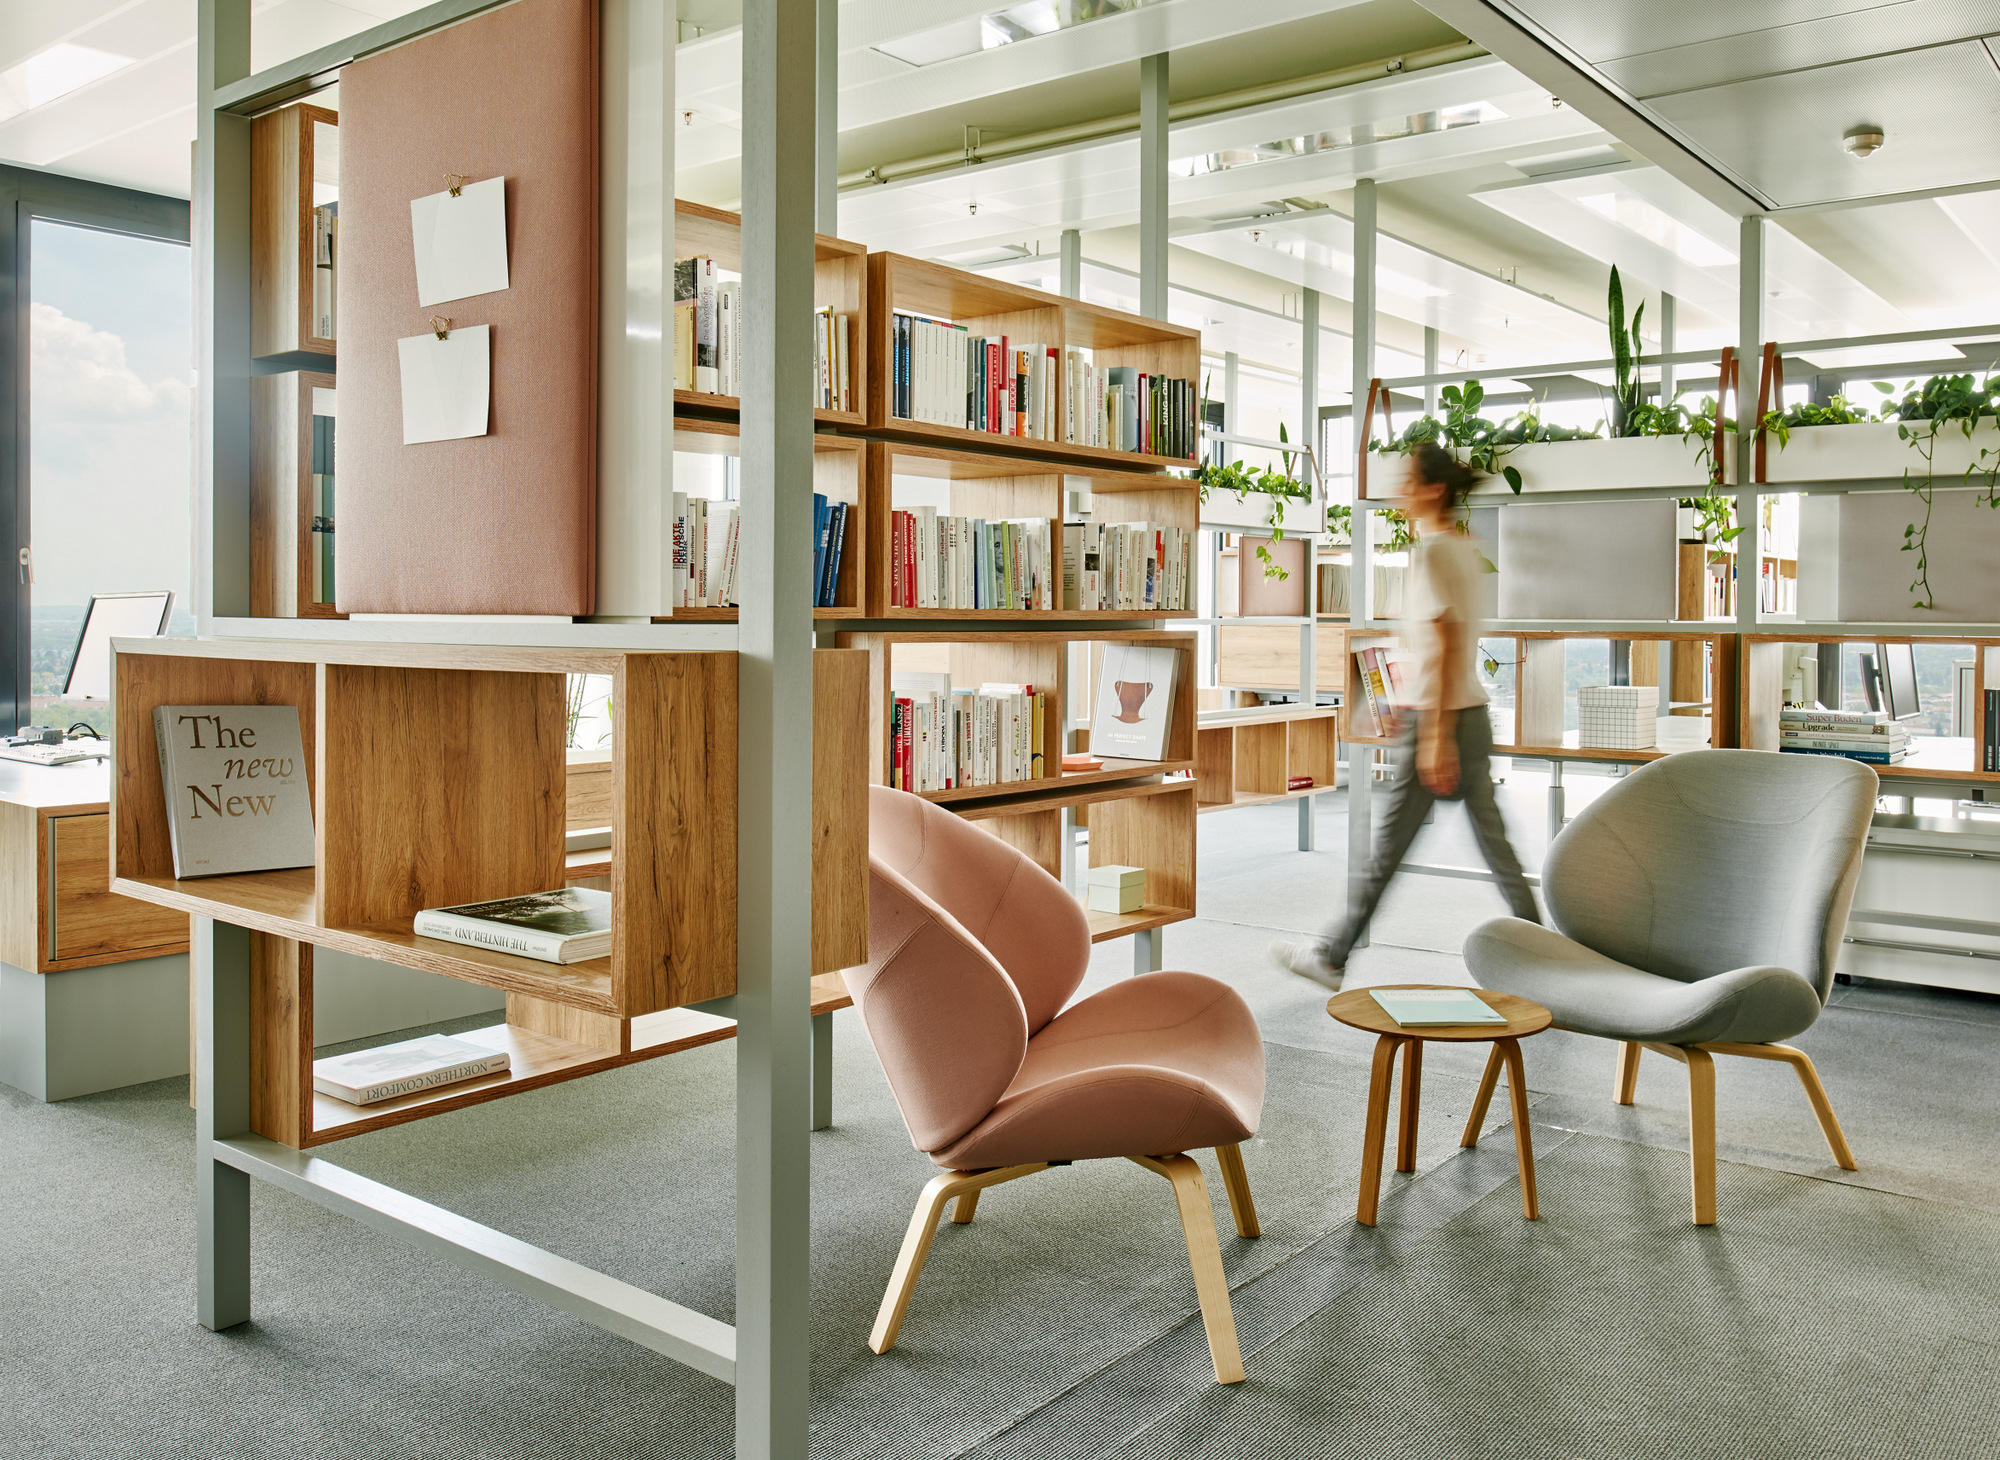 《南德意志报》驻慕尼黑办事处|ART-Arrakis | 建筑室内设计的创新与灵感